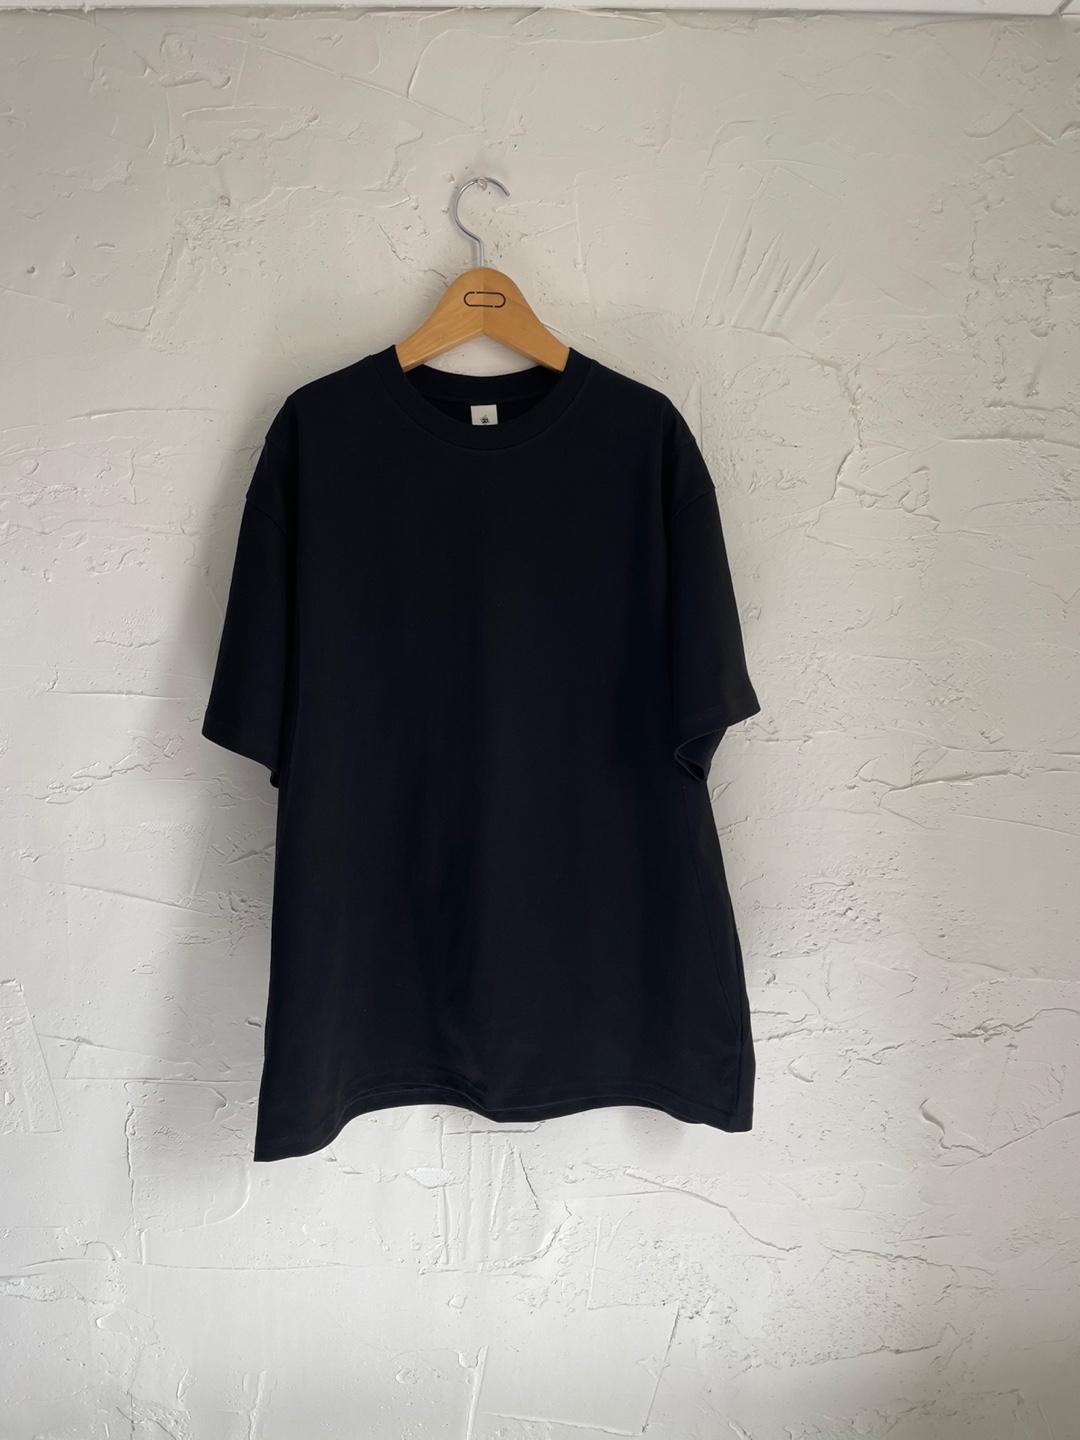 Z cotton t-shirts (black)